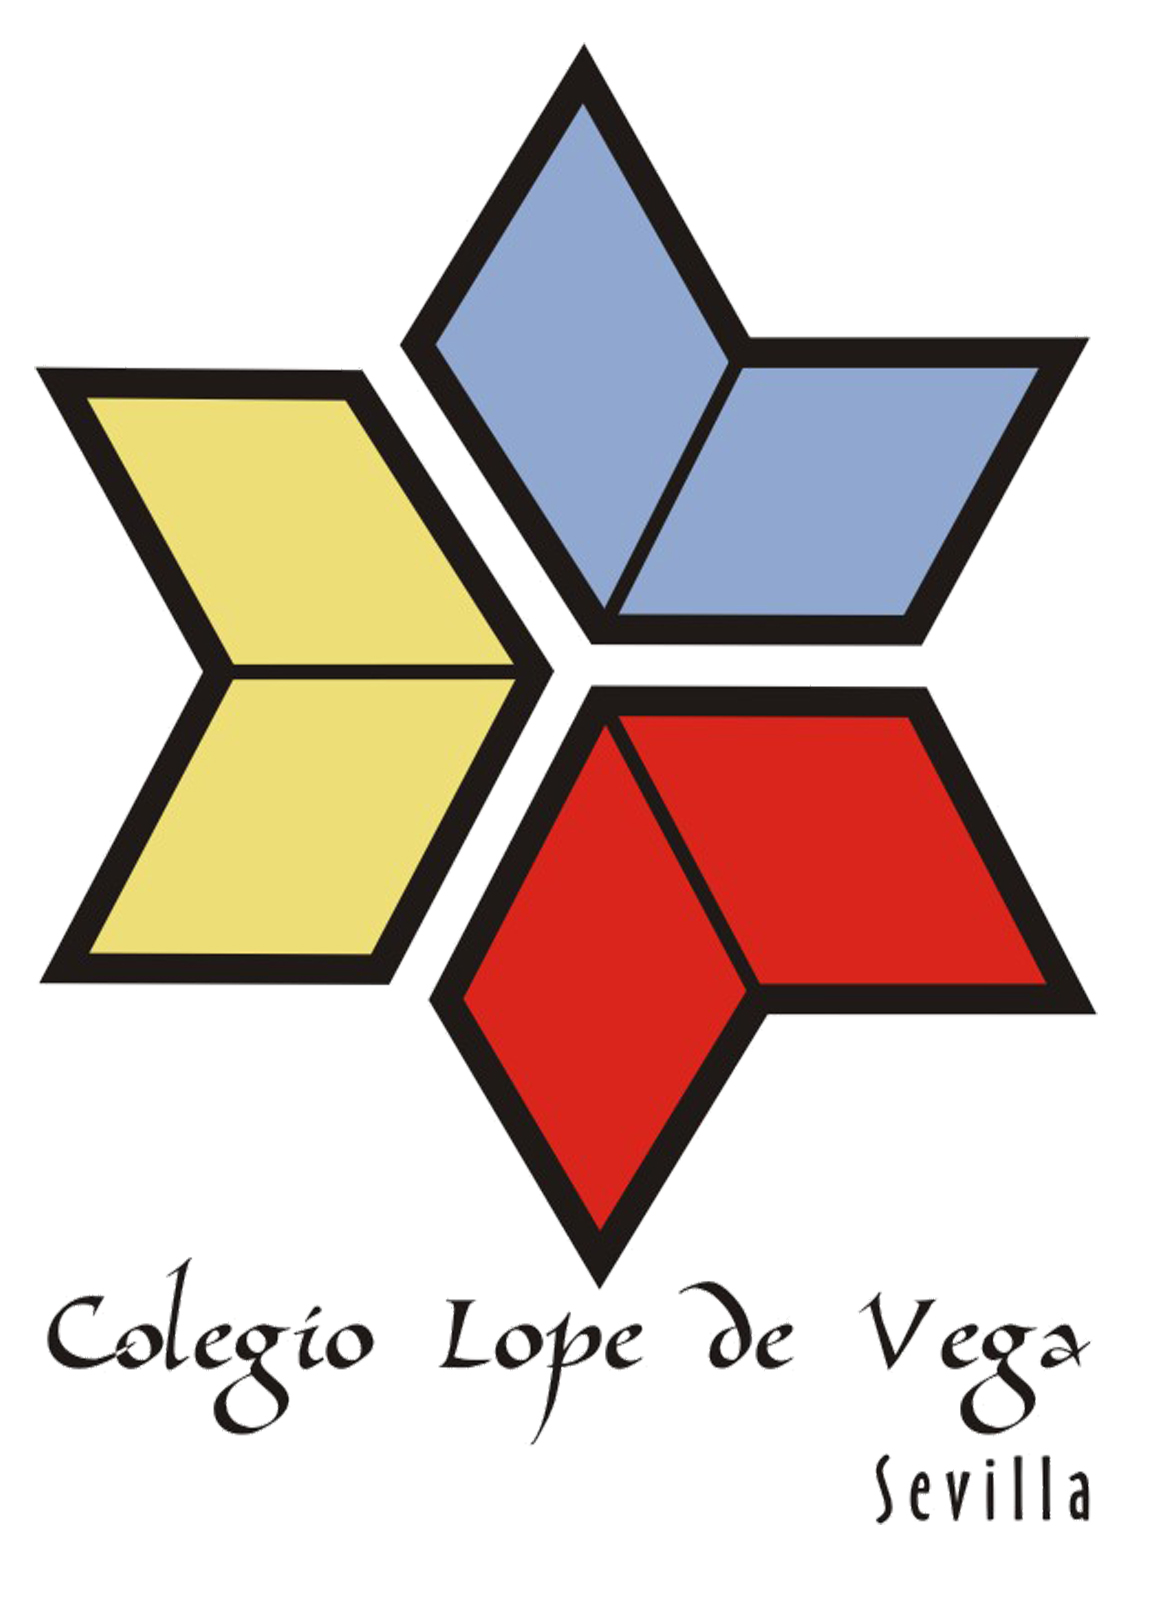 Colegio Lope de Vega (Sevilla) - Soy del Lope #YosoyLdVer